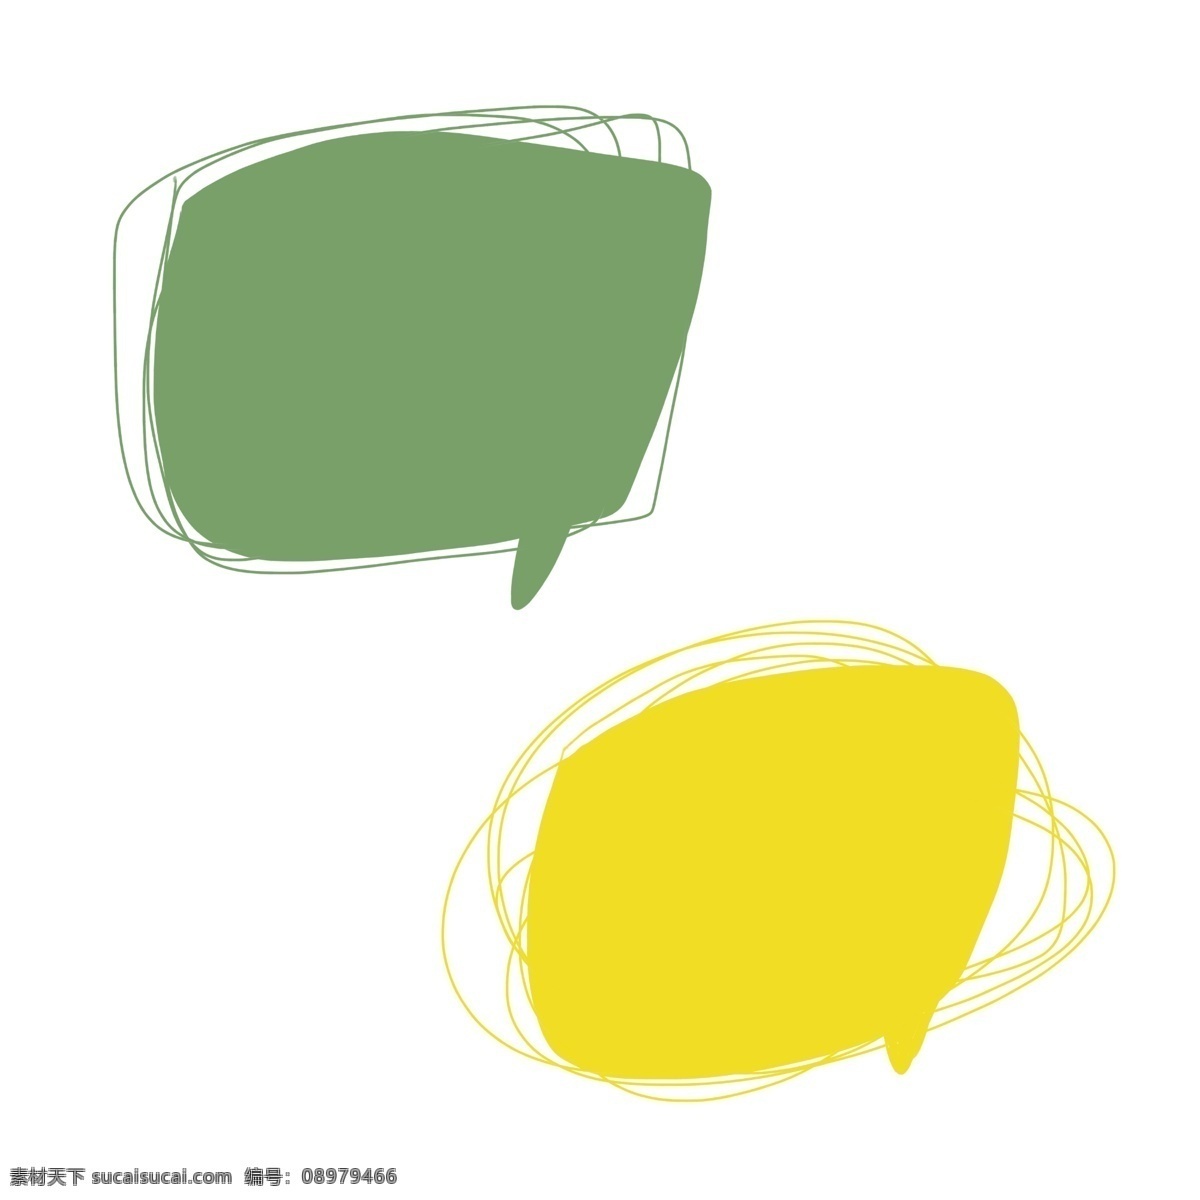 简单 对话框 手绘 线条 可爱 对话款 绿色 黄色 简约 框 线条对话框 几何形 手绘图形 卡通手绘 对话框图形